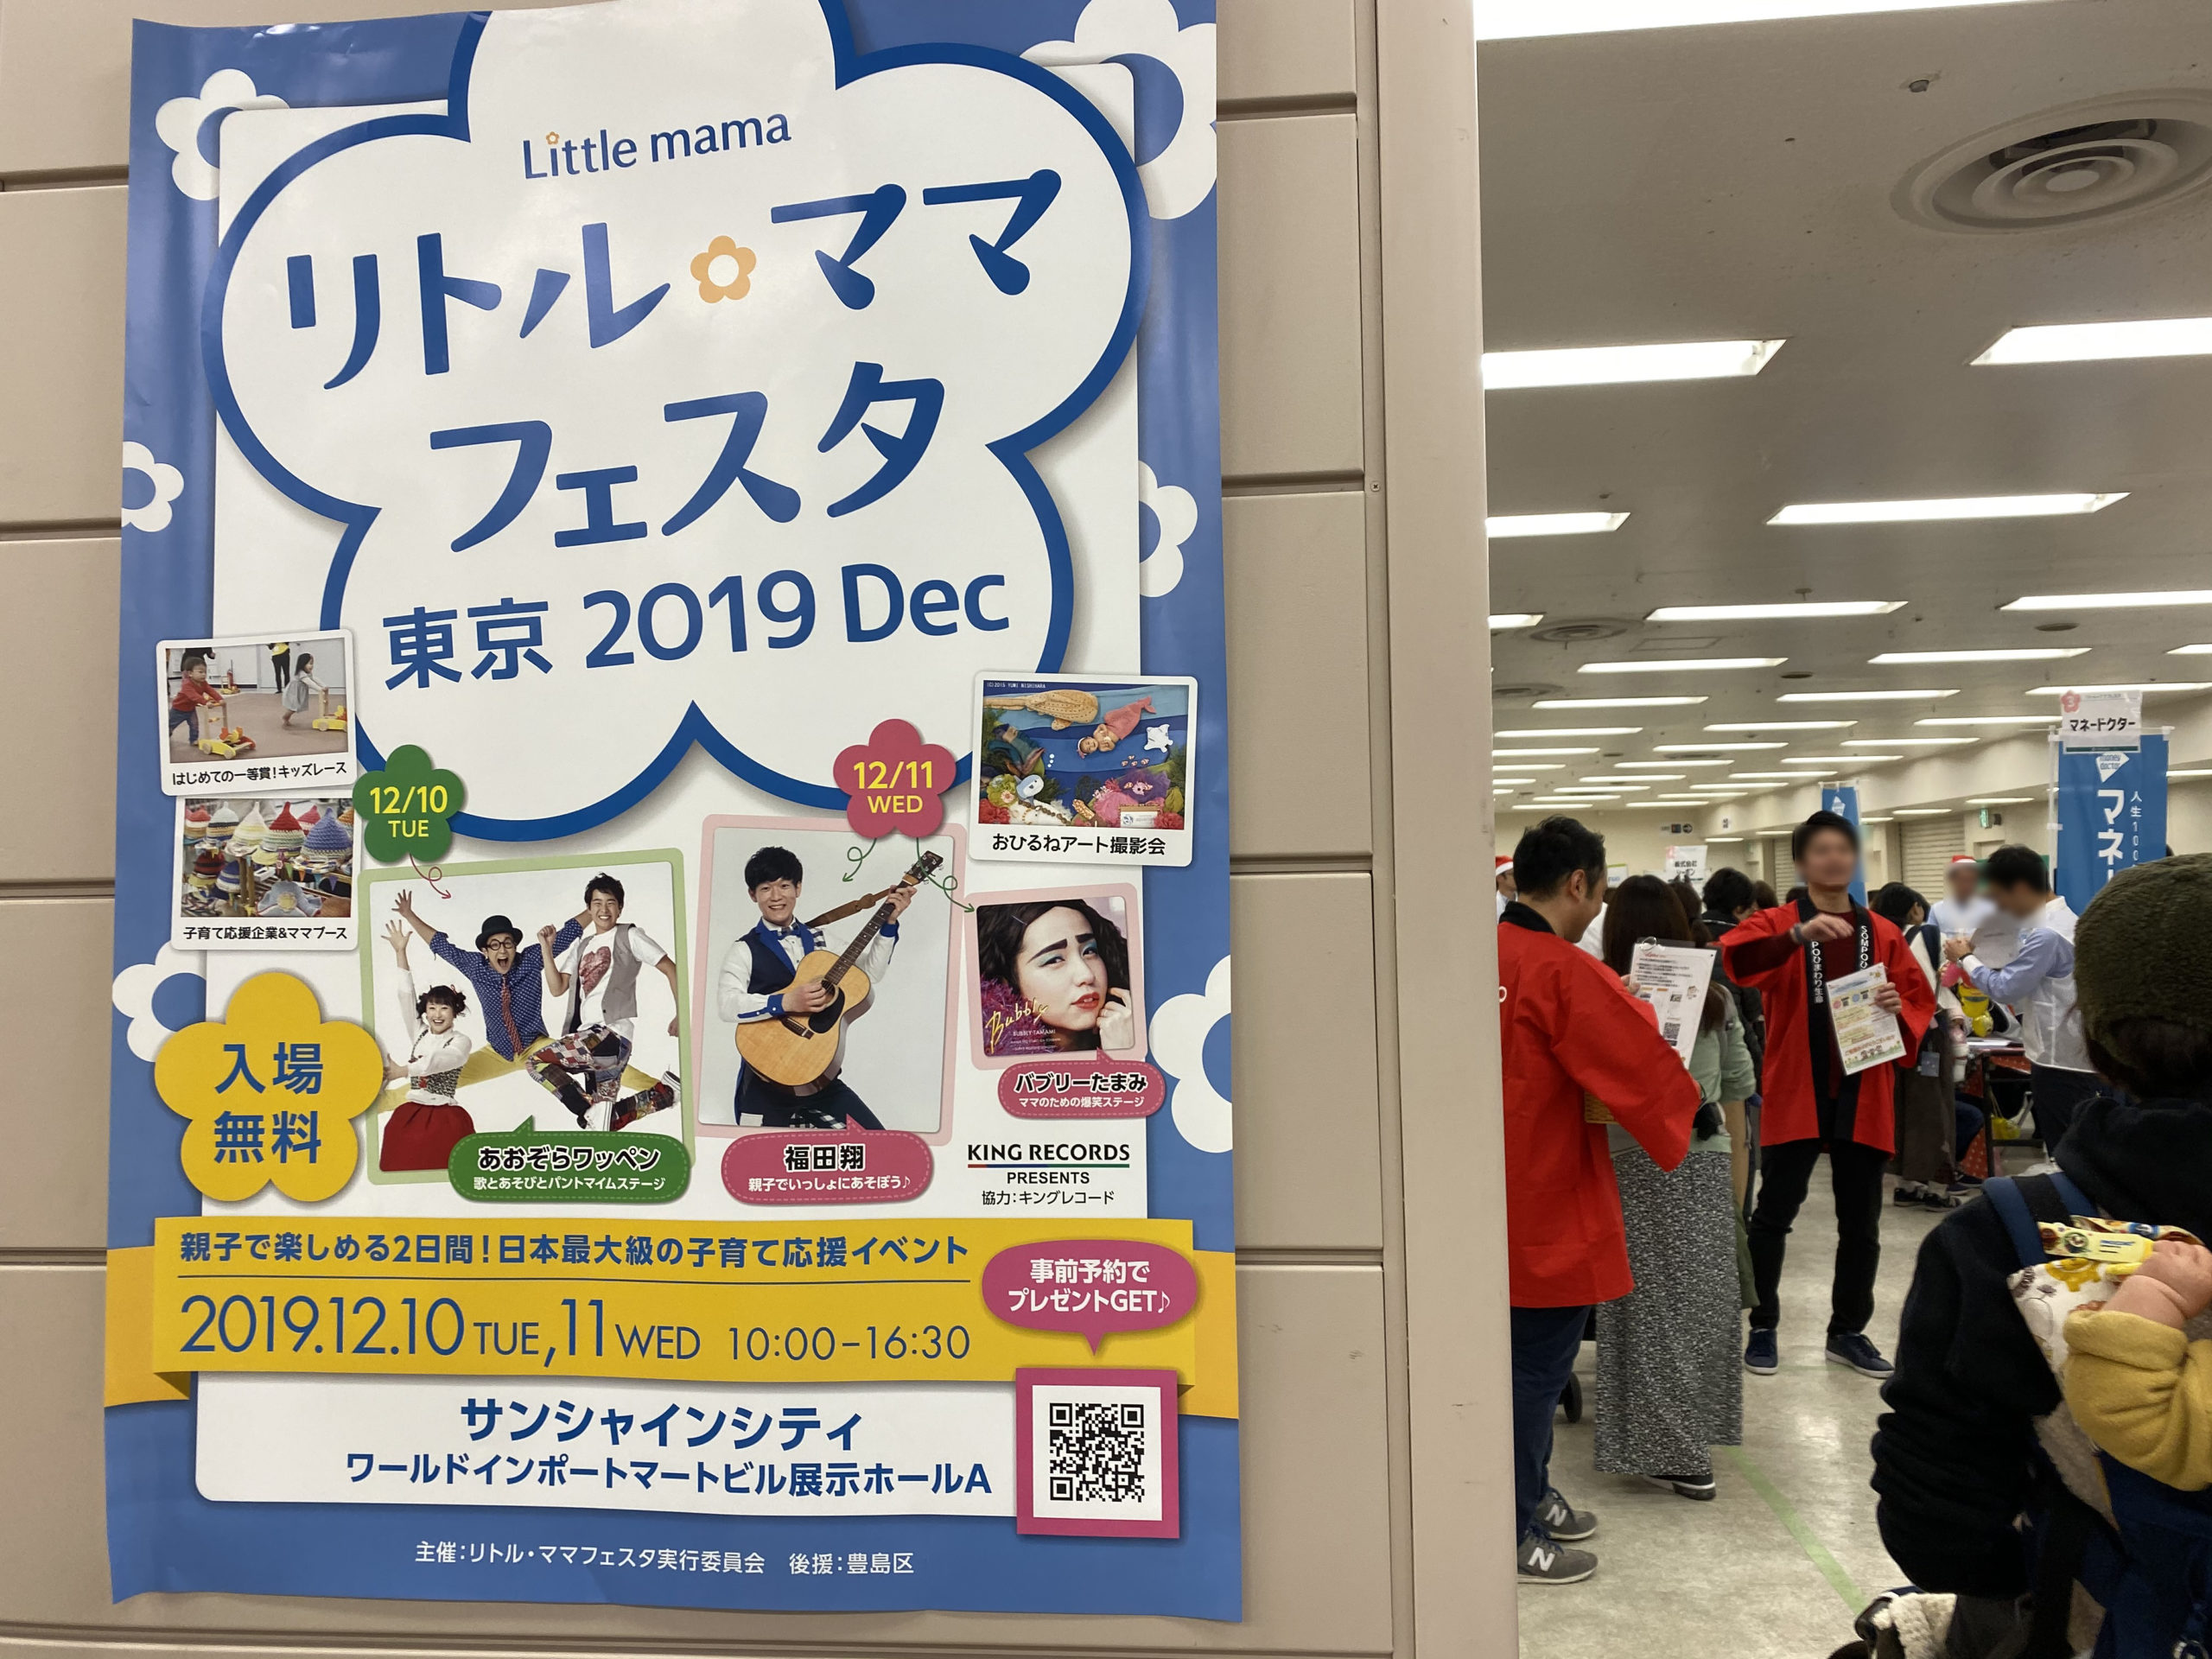 リトル ママフェスタ Little Mama Festa Event Review